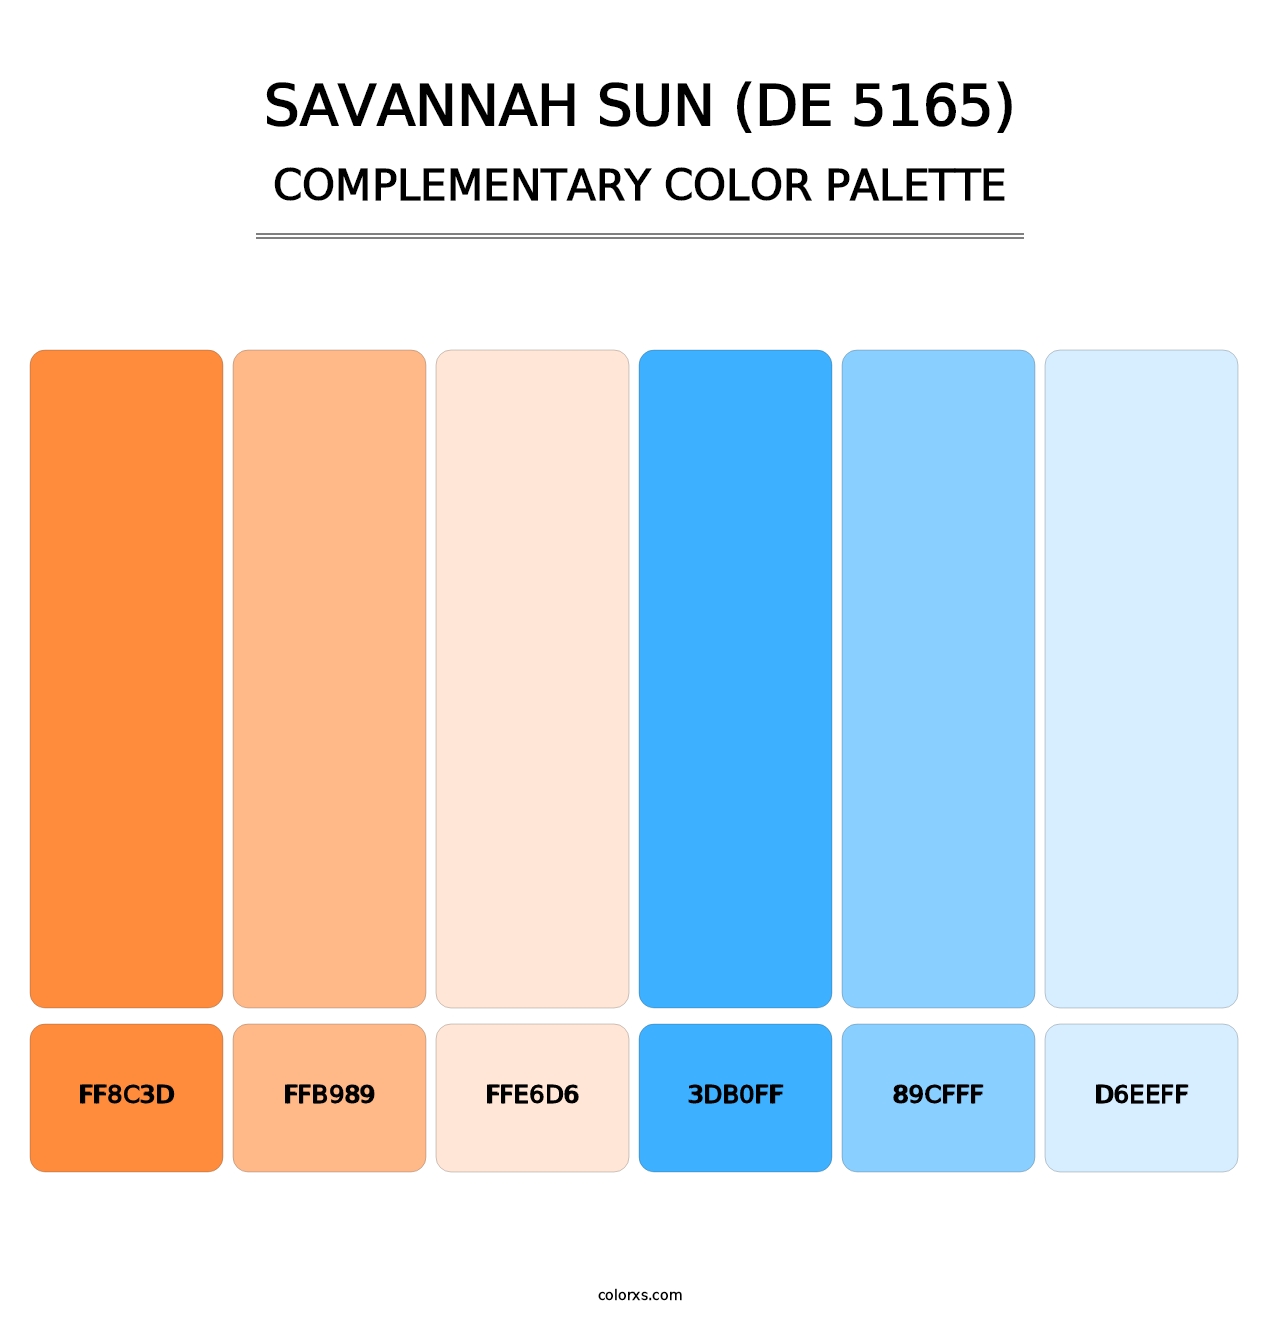 Savannah Sun (DE 5165) - Complementary Color Palette